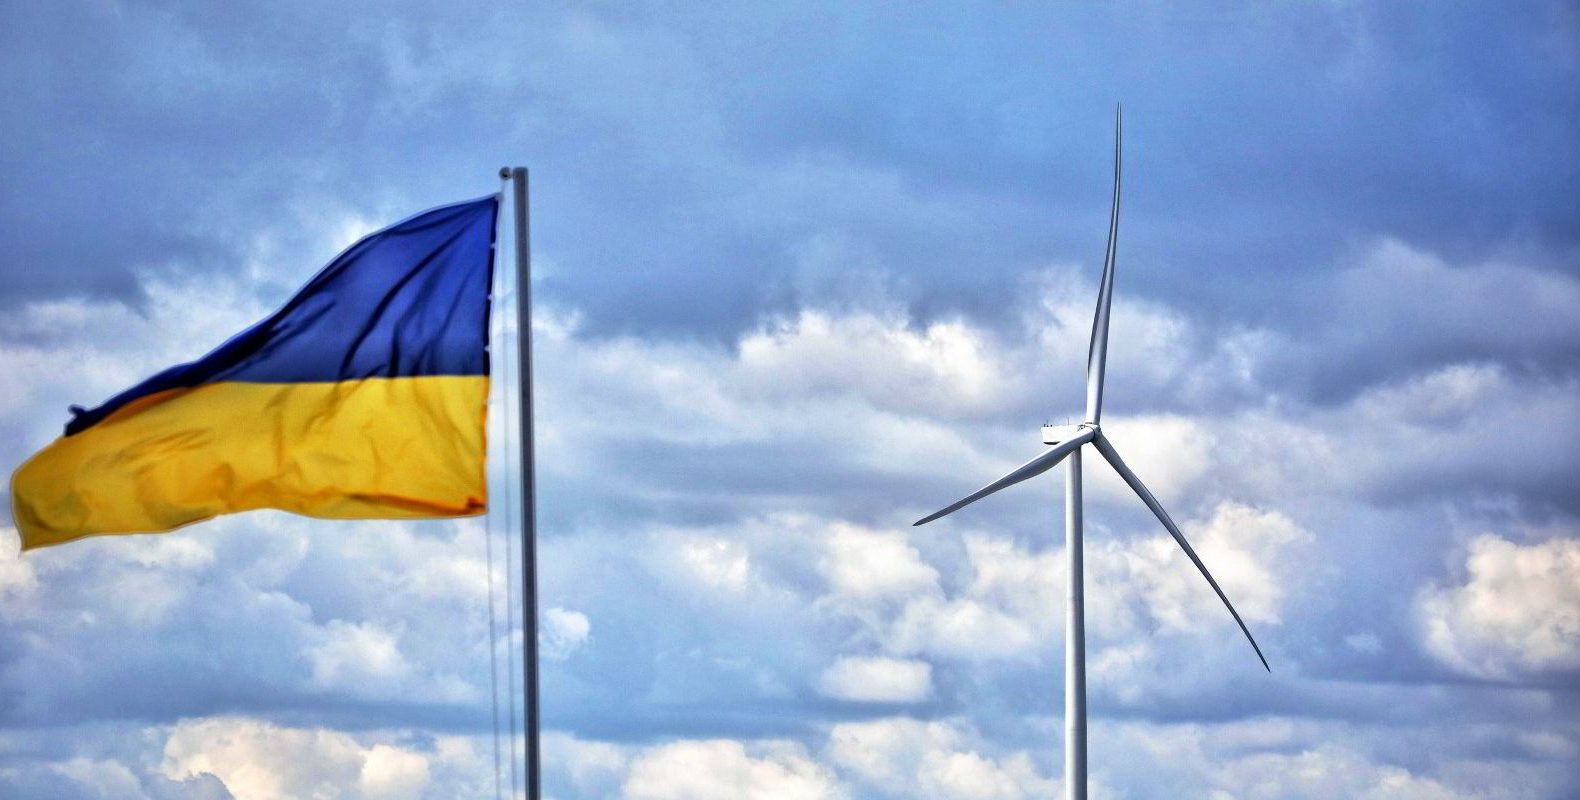 La guerra in Ucraina e le fonti energetiche: l’importanza delle politiche ambientali e le soluzioni del Green Deal europeo